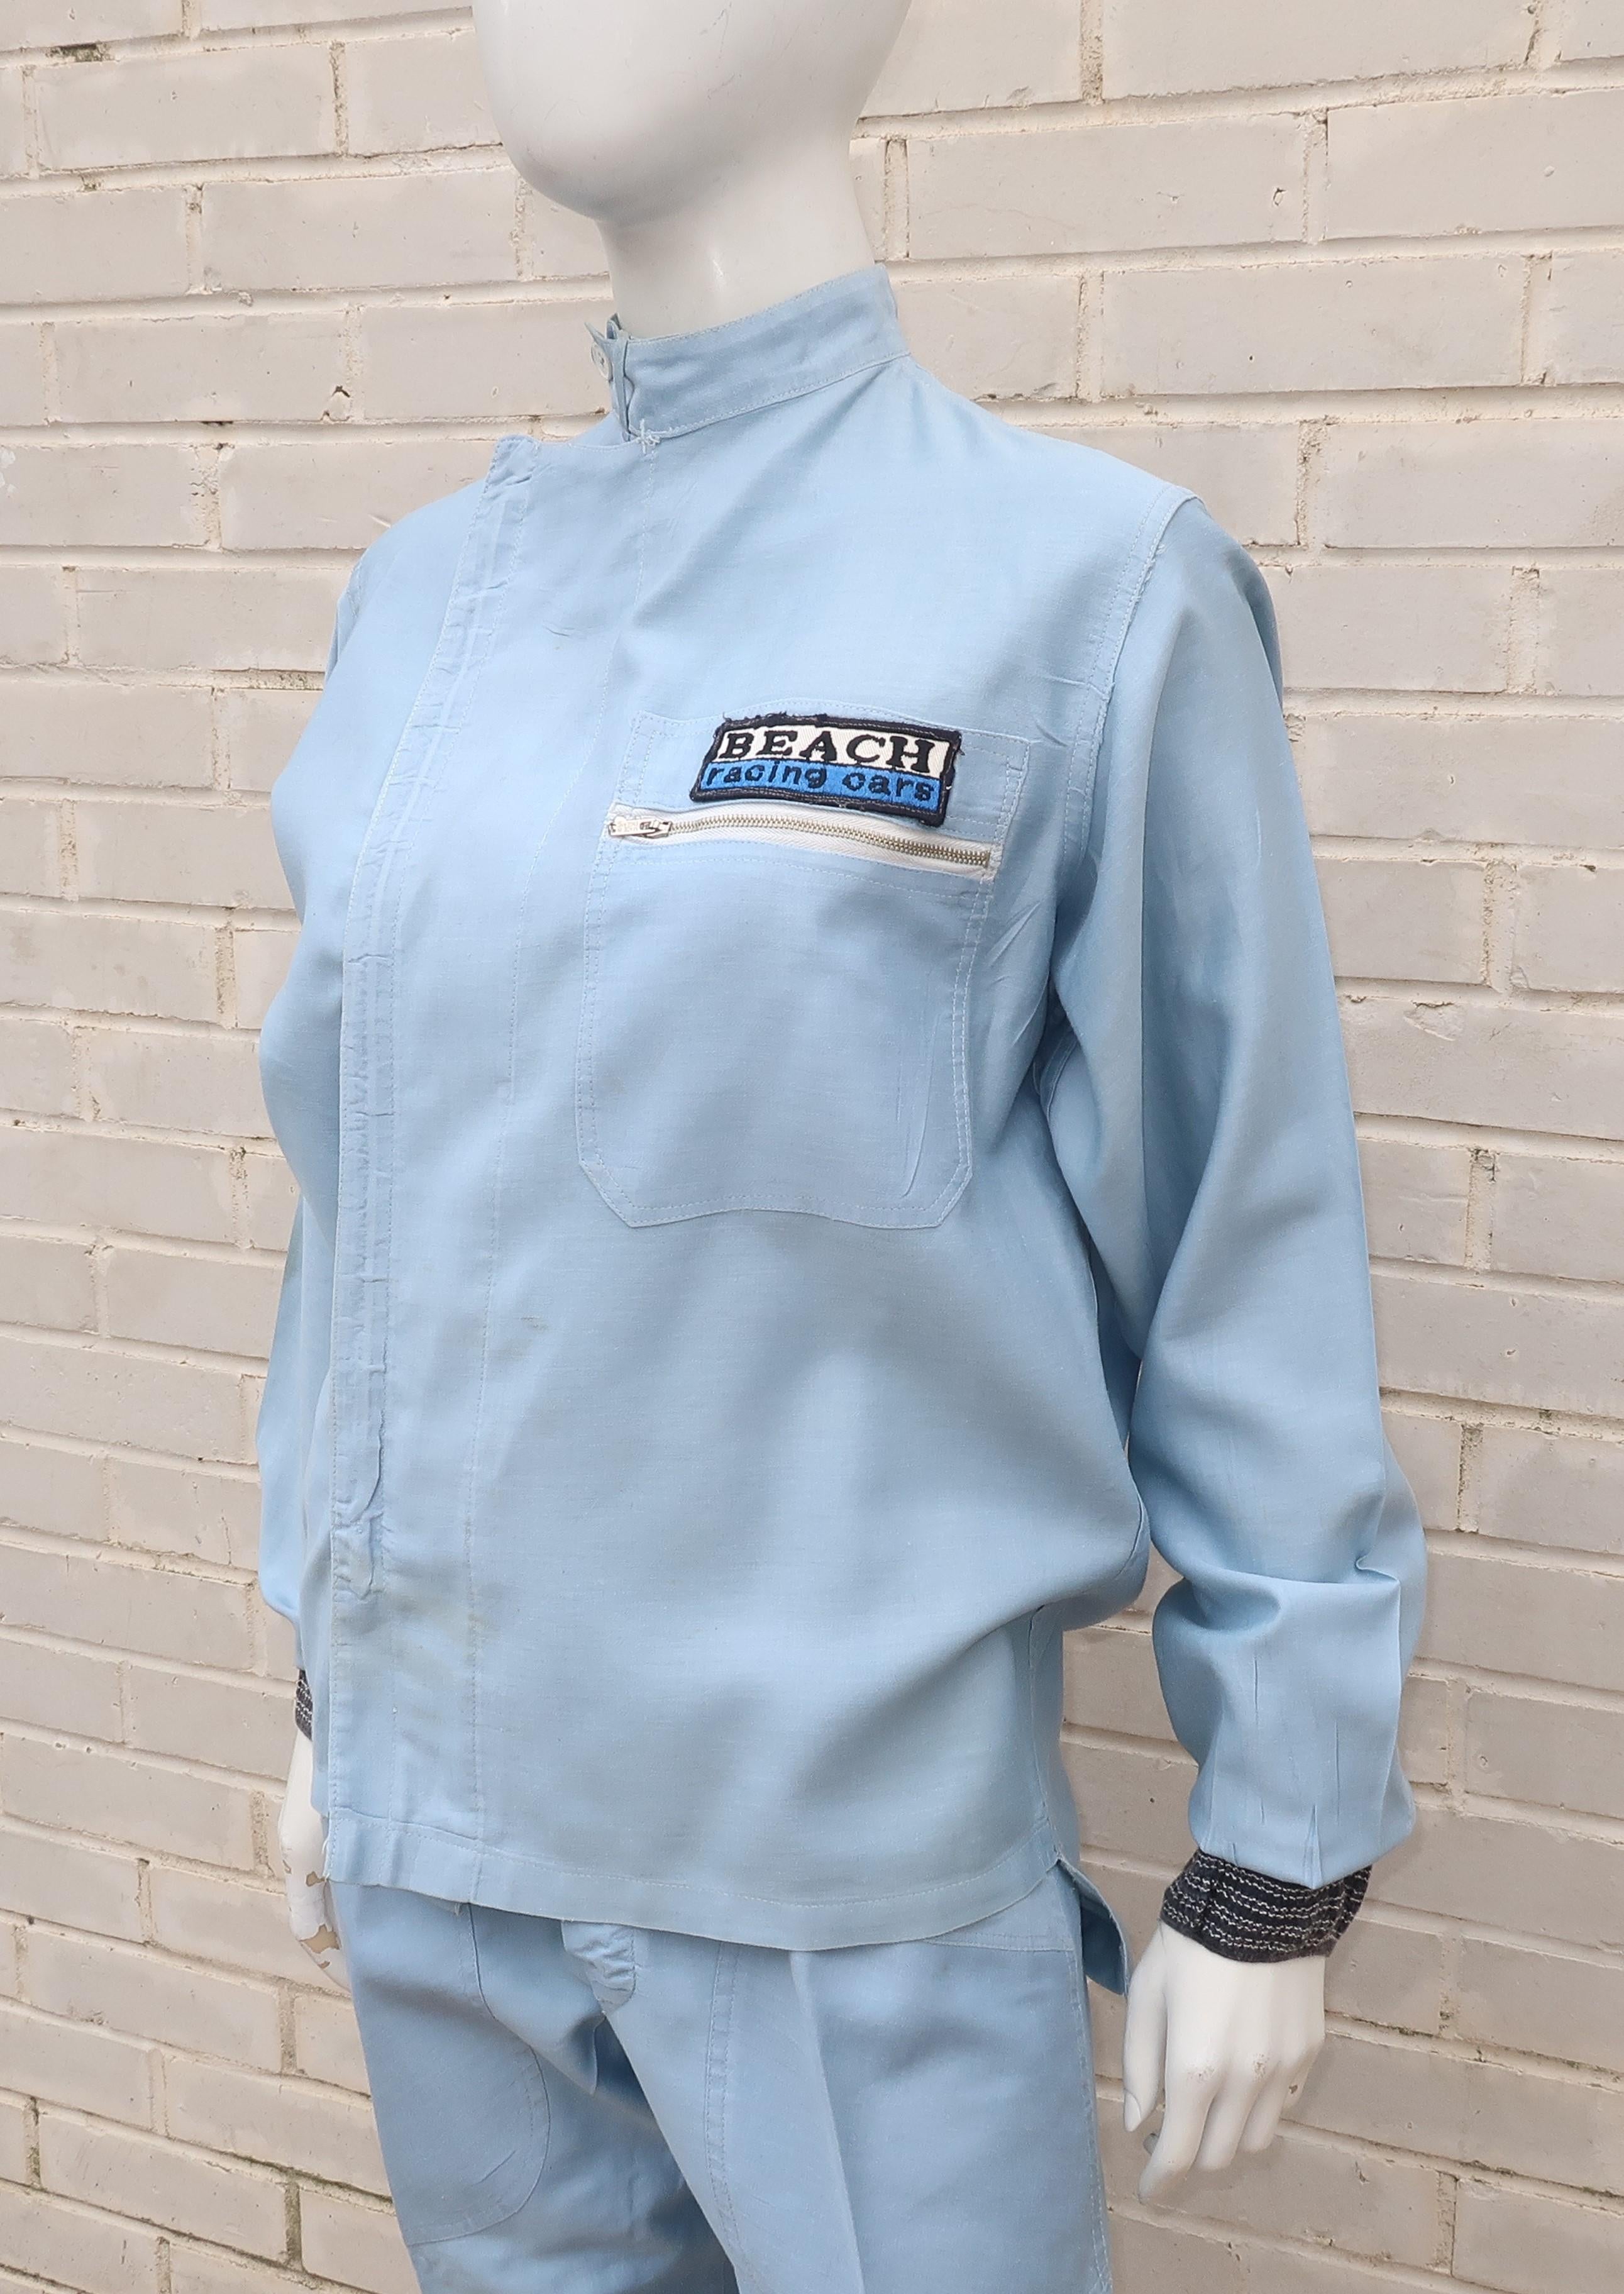 Women's or Men's Authentic 1960’s Auto Racing Uniform Suit